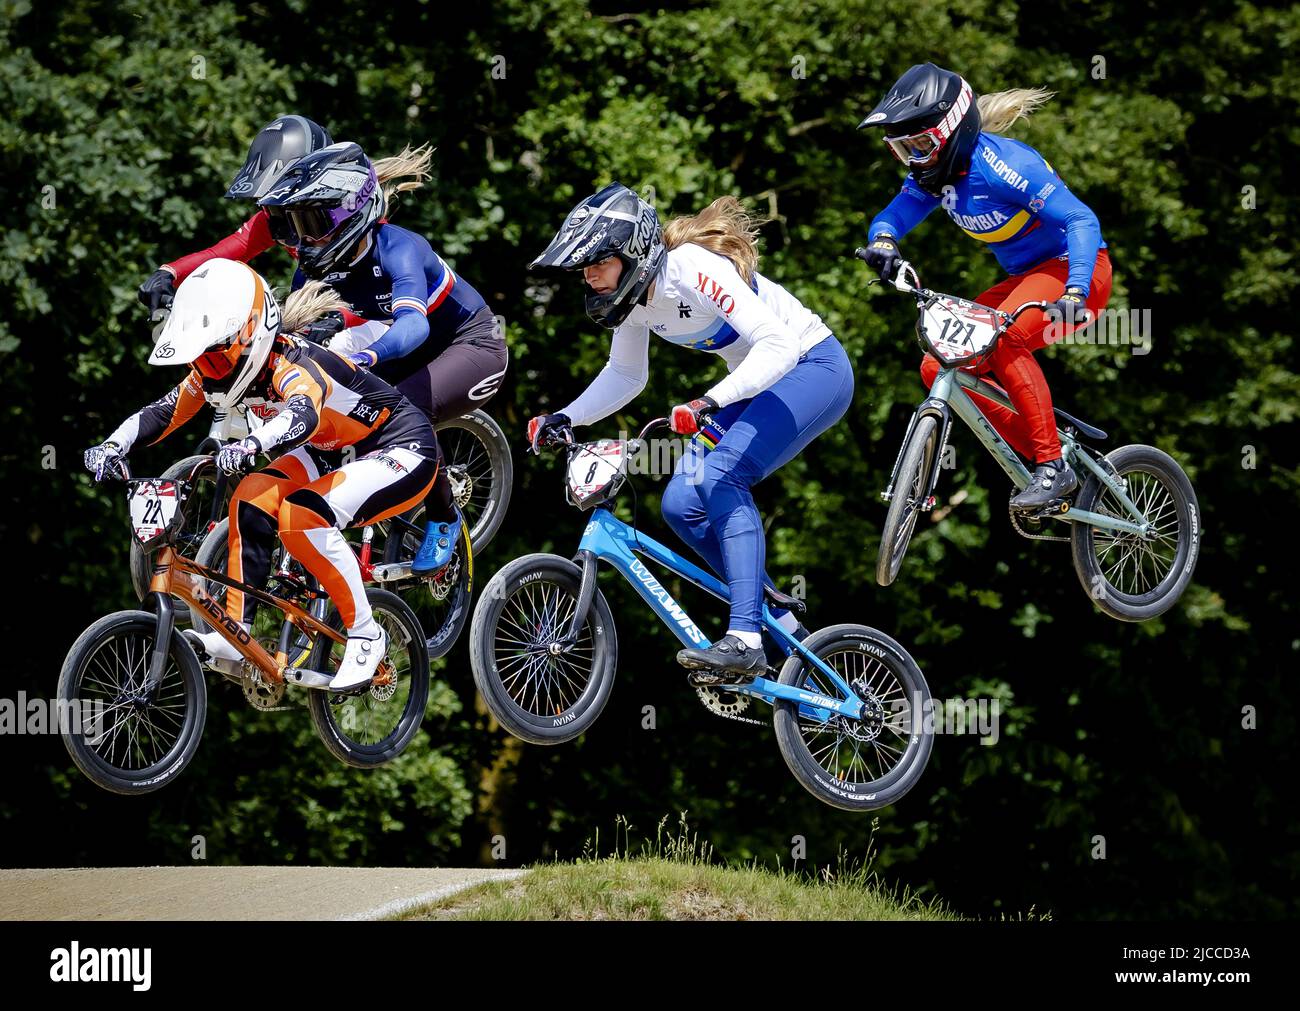 PAPENDAL - Merel Smulders (22) in azione durante la quarta gara di Coppa del mondo BMX. ANP ROBIN VAN LONKHUIJSEN Foto Stock